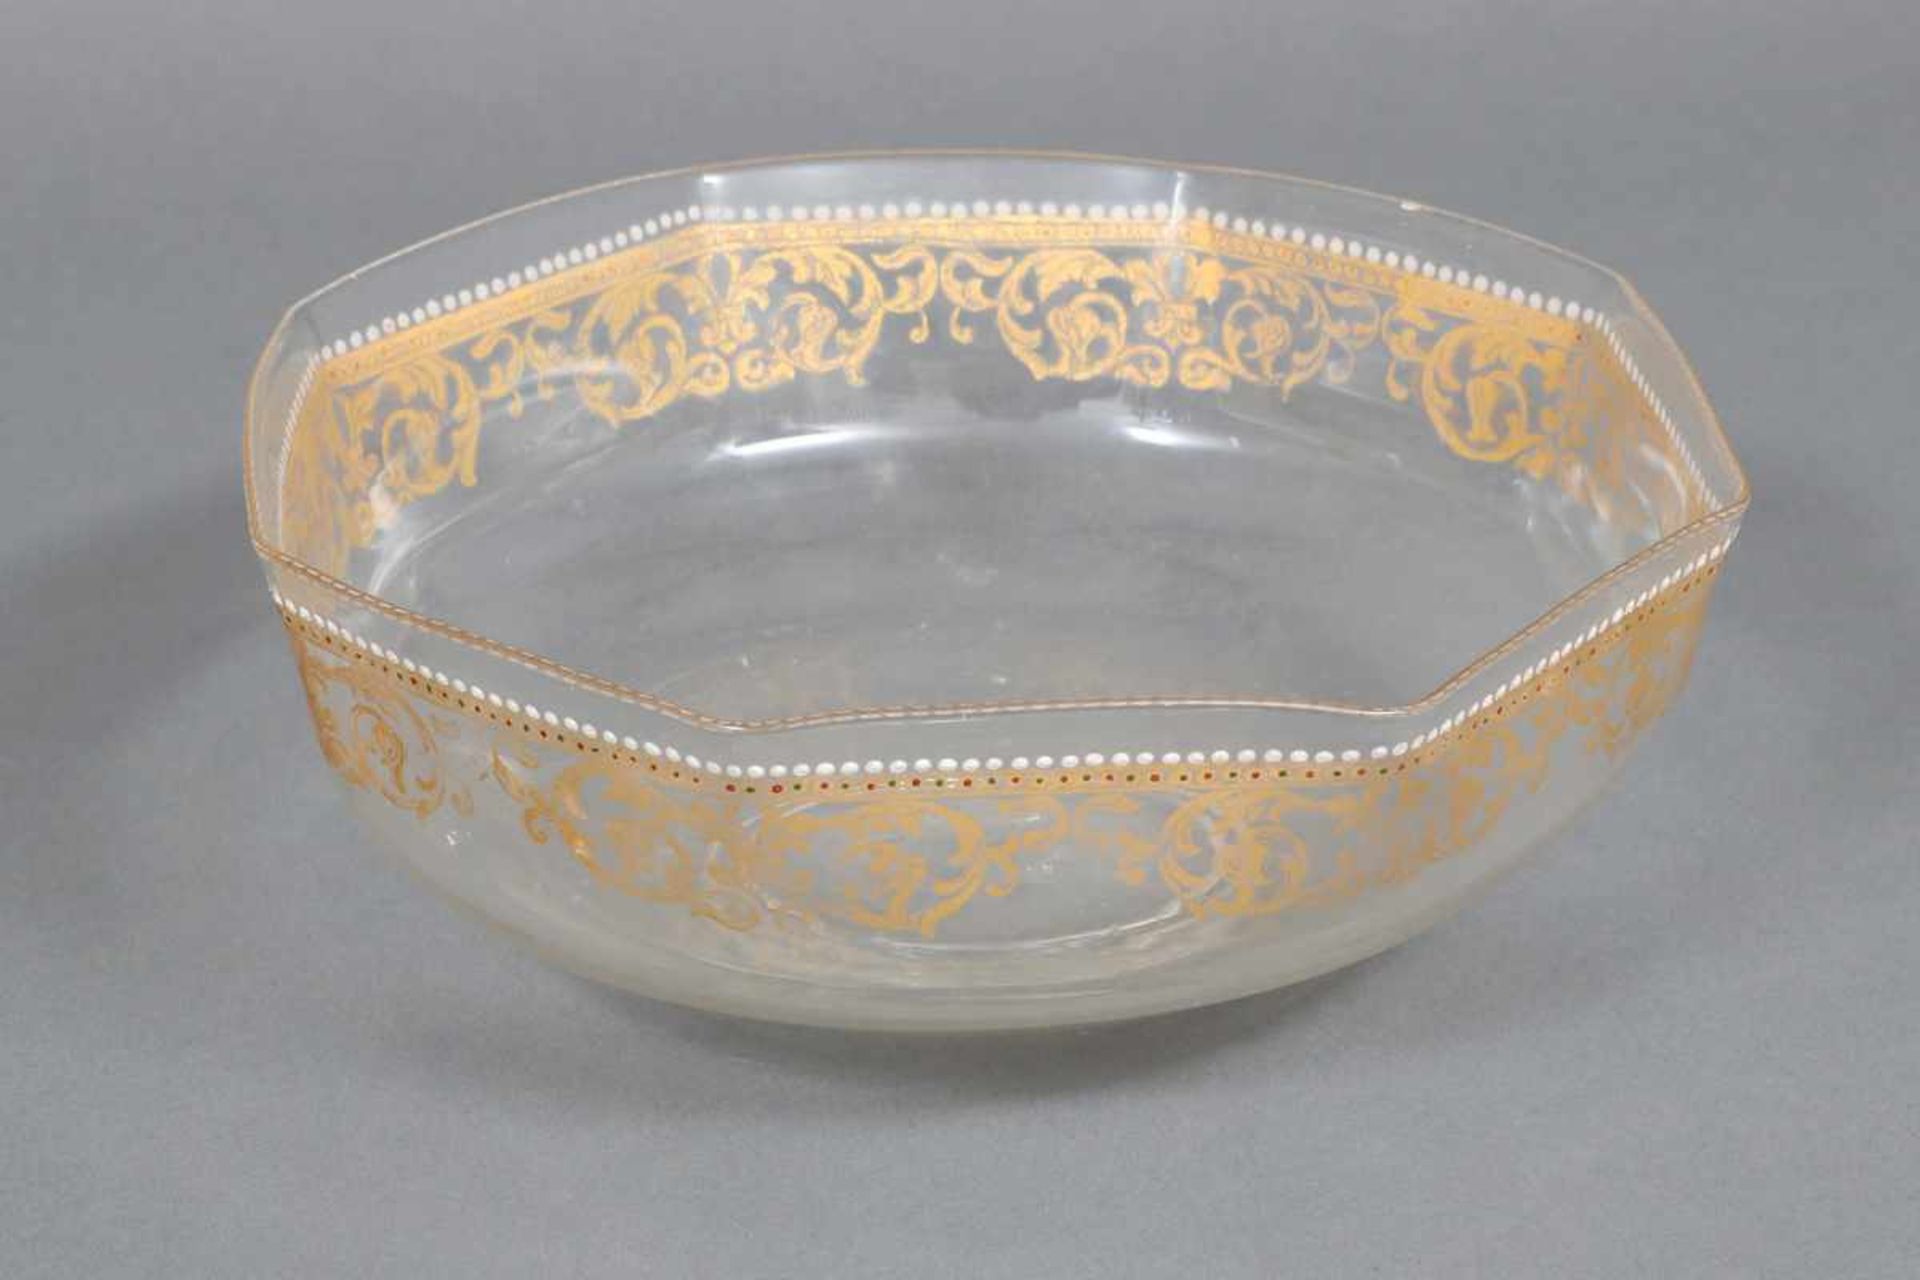 ¨Facon de Venise¨ Schale farbloses Glas, wohl um 1800, polygonale Schale, feine Goldbemalung (